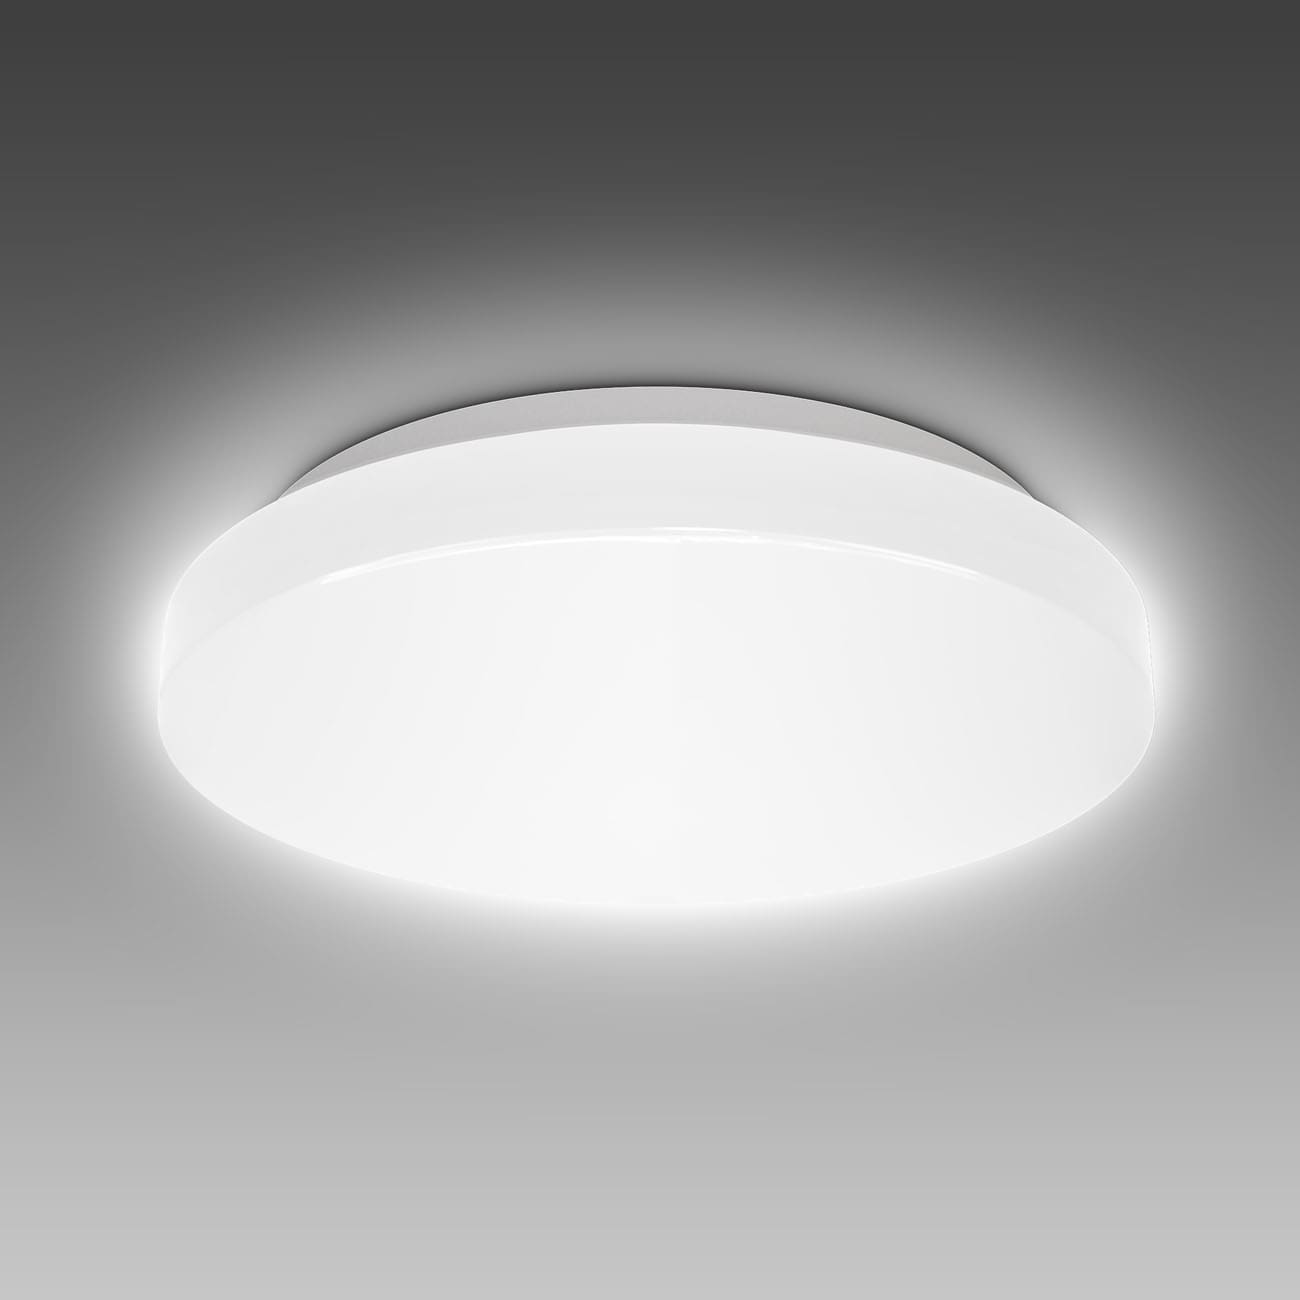 LED Deckenleuchte Badlampe IP44 S - 3